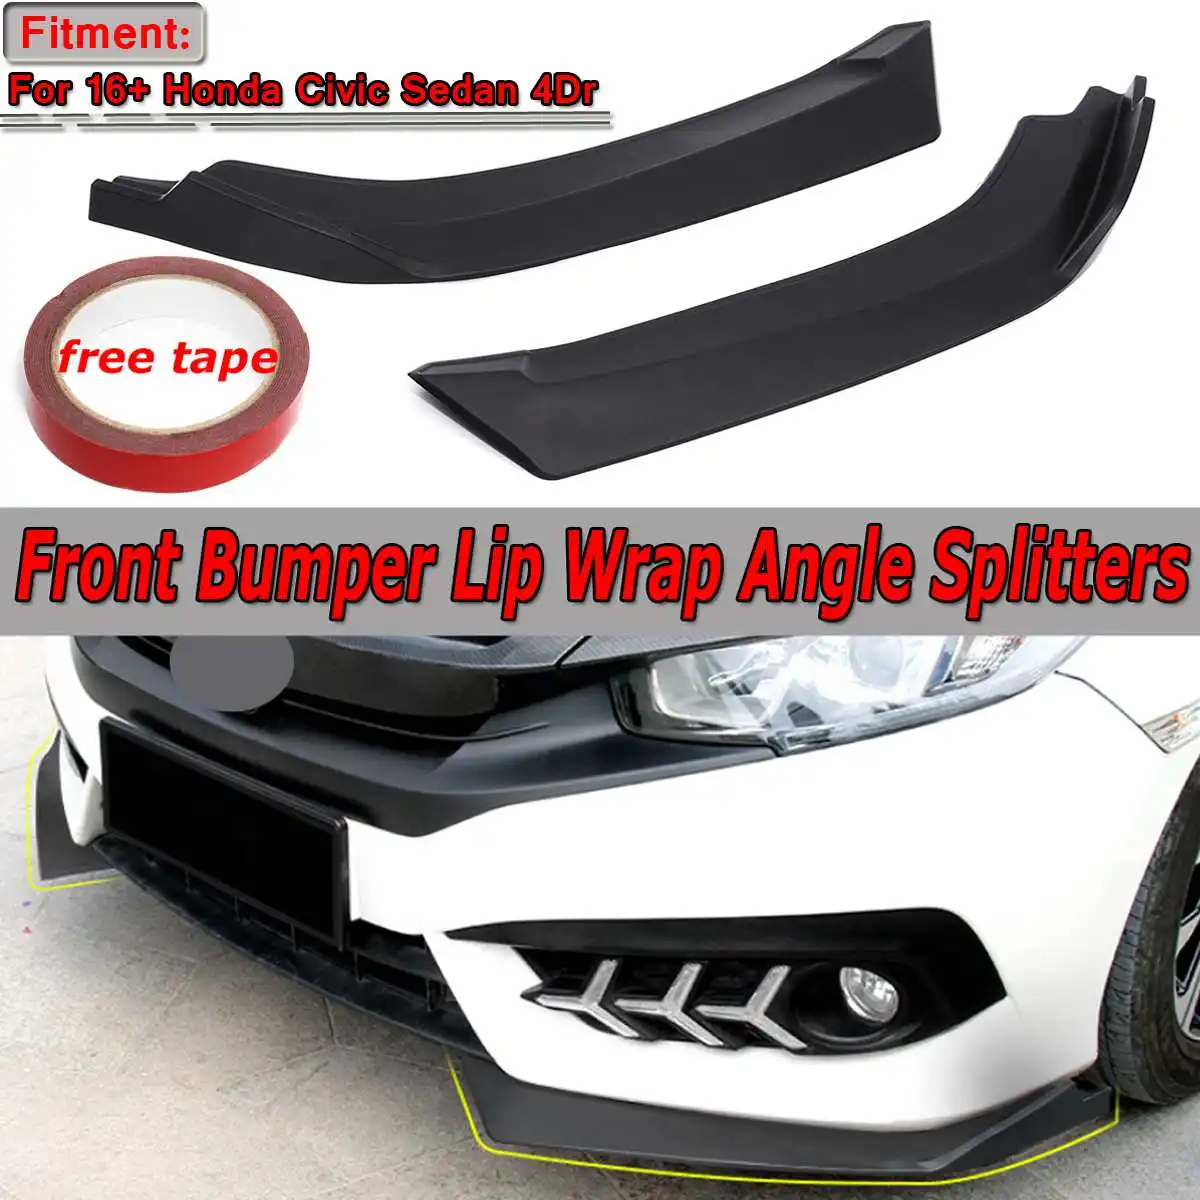 2x углерод вид/Черный Автомобильный передний бампер сплиттерная губа Spolier диффузор защитный корпус для Honda Для Civic Sedan 4Dr